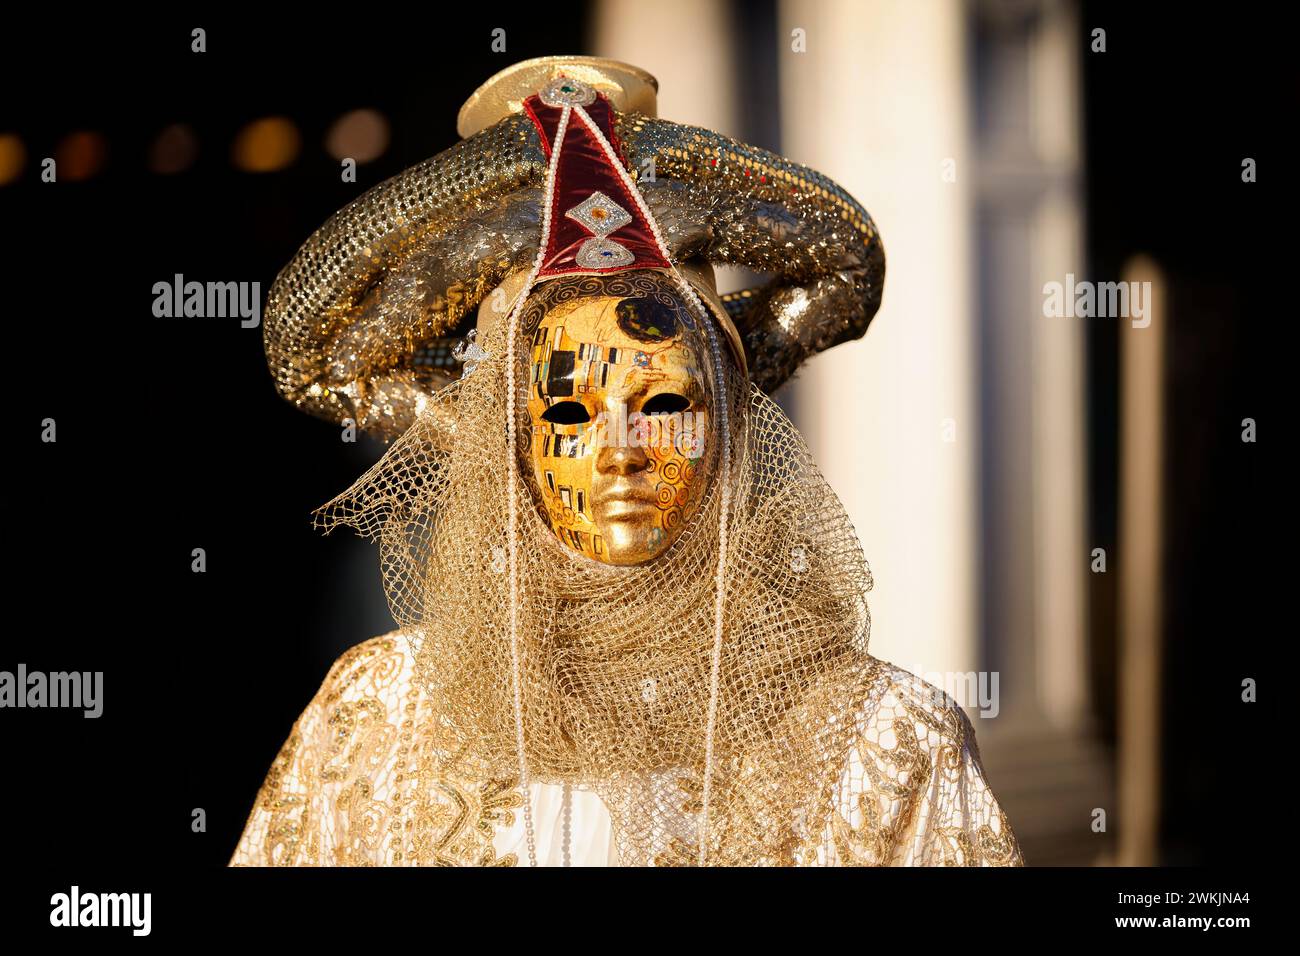 A Venice carnival mask in St. Marks square, Venice, Veneto, Italy. Stock Photo